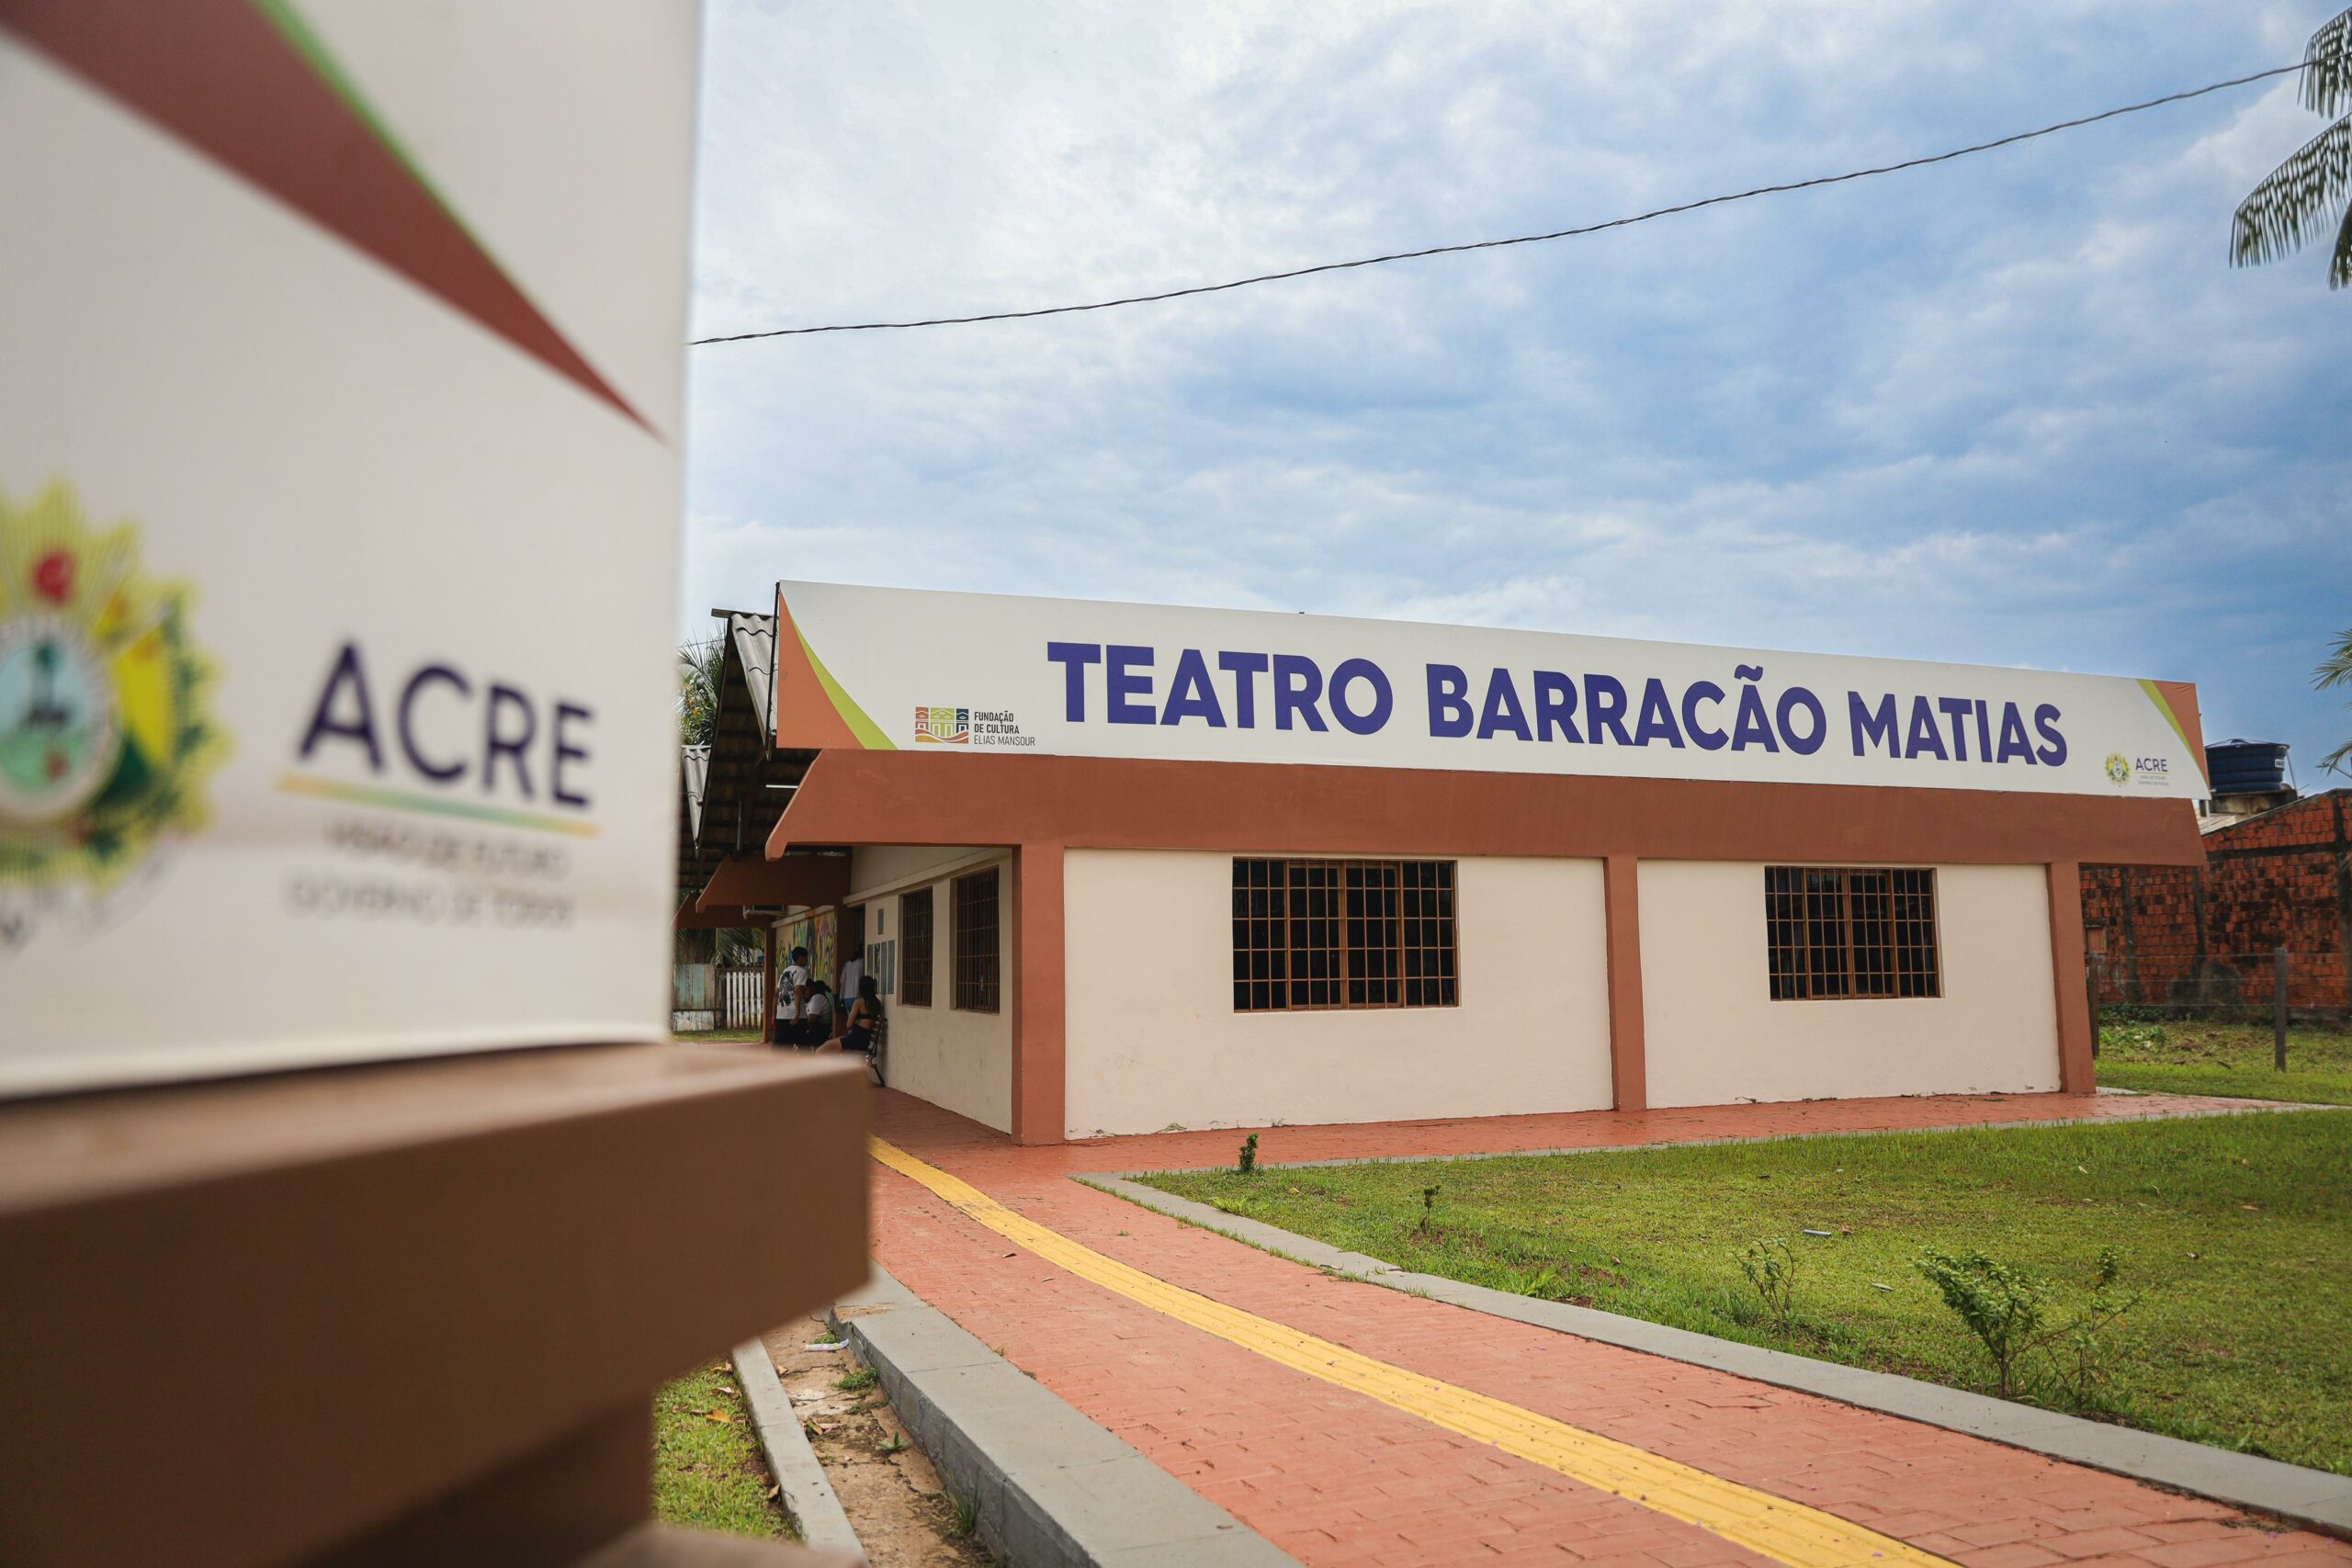 Intervenções culturais e capacitação profissional transformam vidas no Teatro Barracão Matias